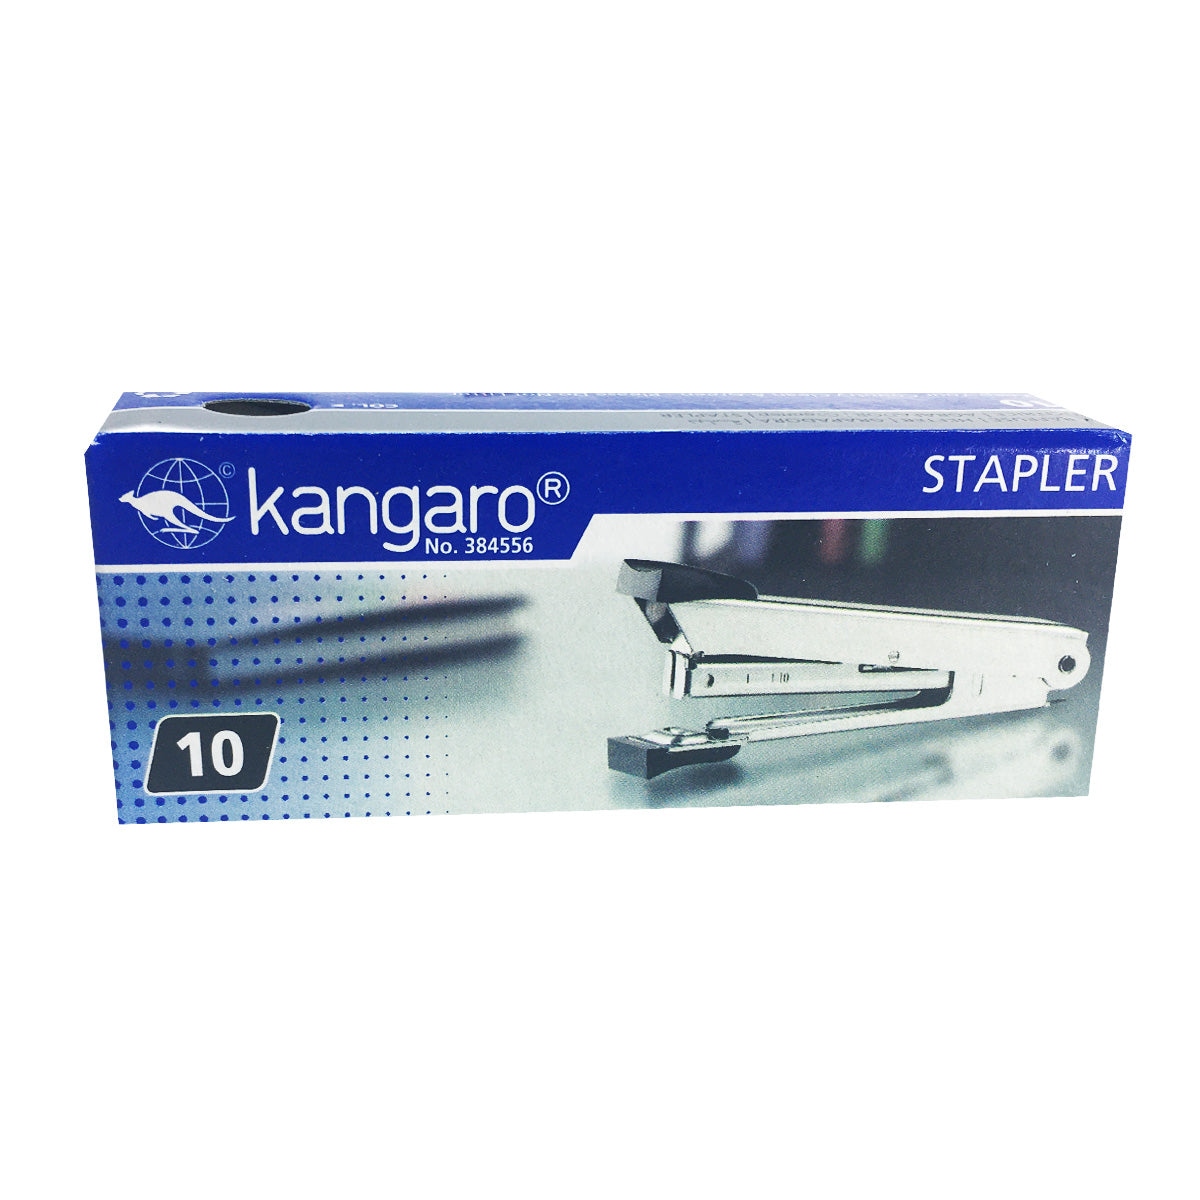 Kangaro No.10 Stapler 20 Sheet Capacity